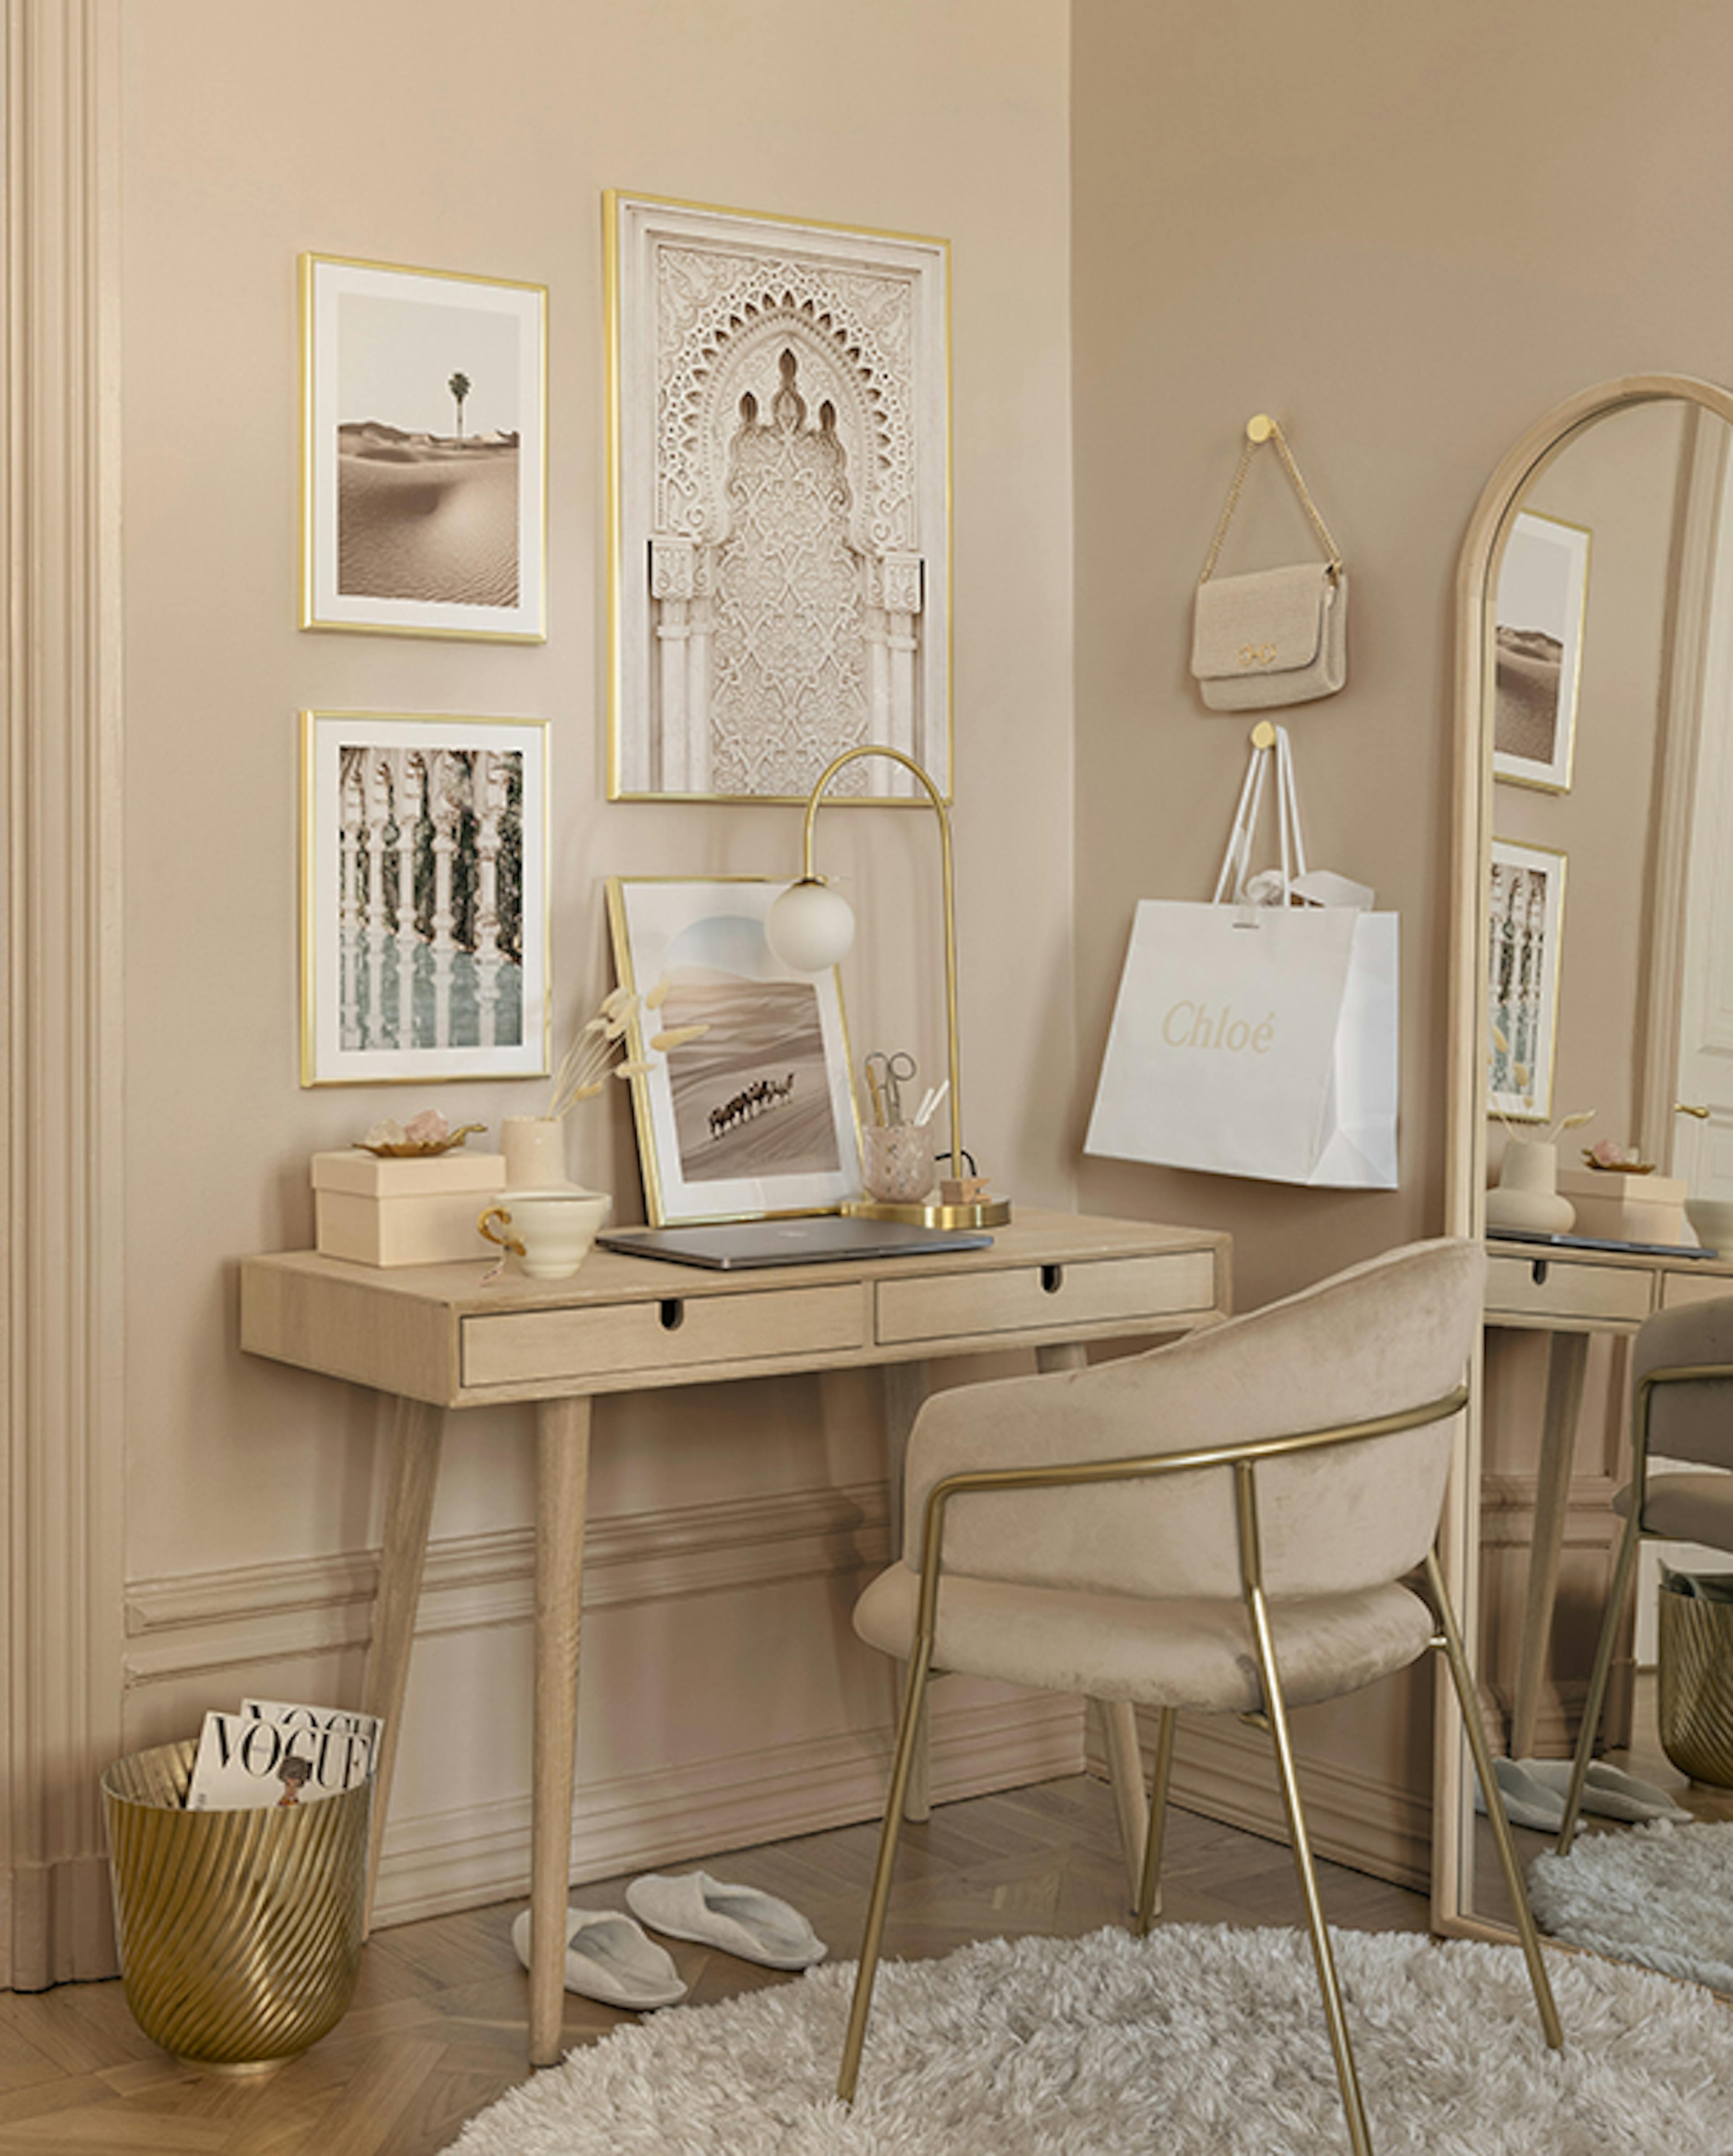 Historische Bilderwand kombiniert mit Naturpostern in einer beigen Farbpalette mit goldenen Bilderrahmen für das Home Office.